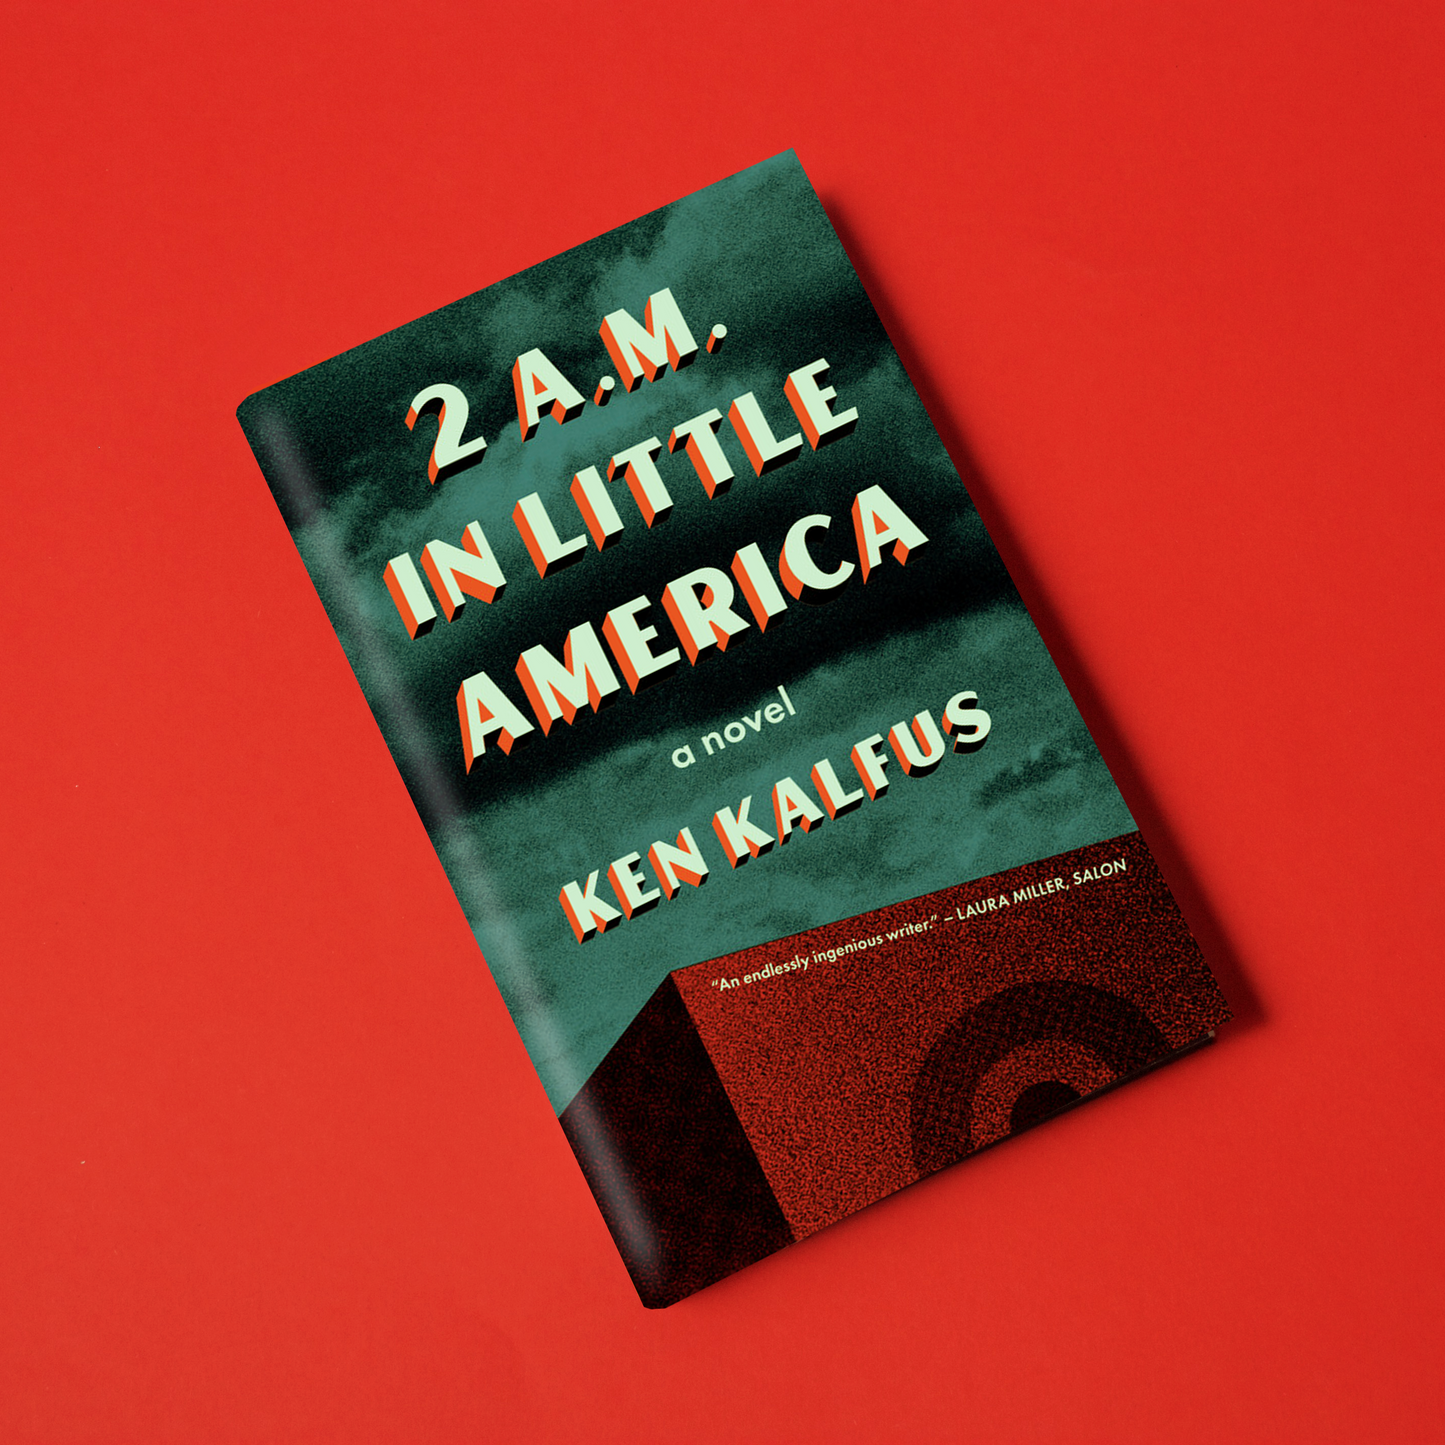 2 A.M. in Little America, by Ken Kalfus